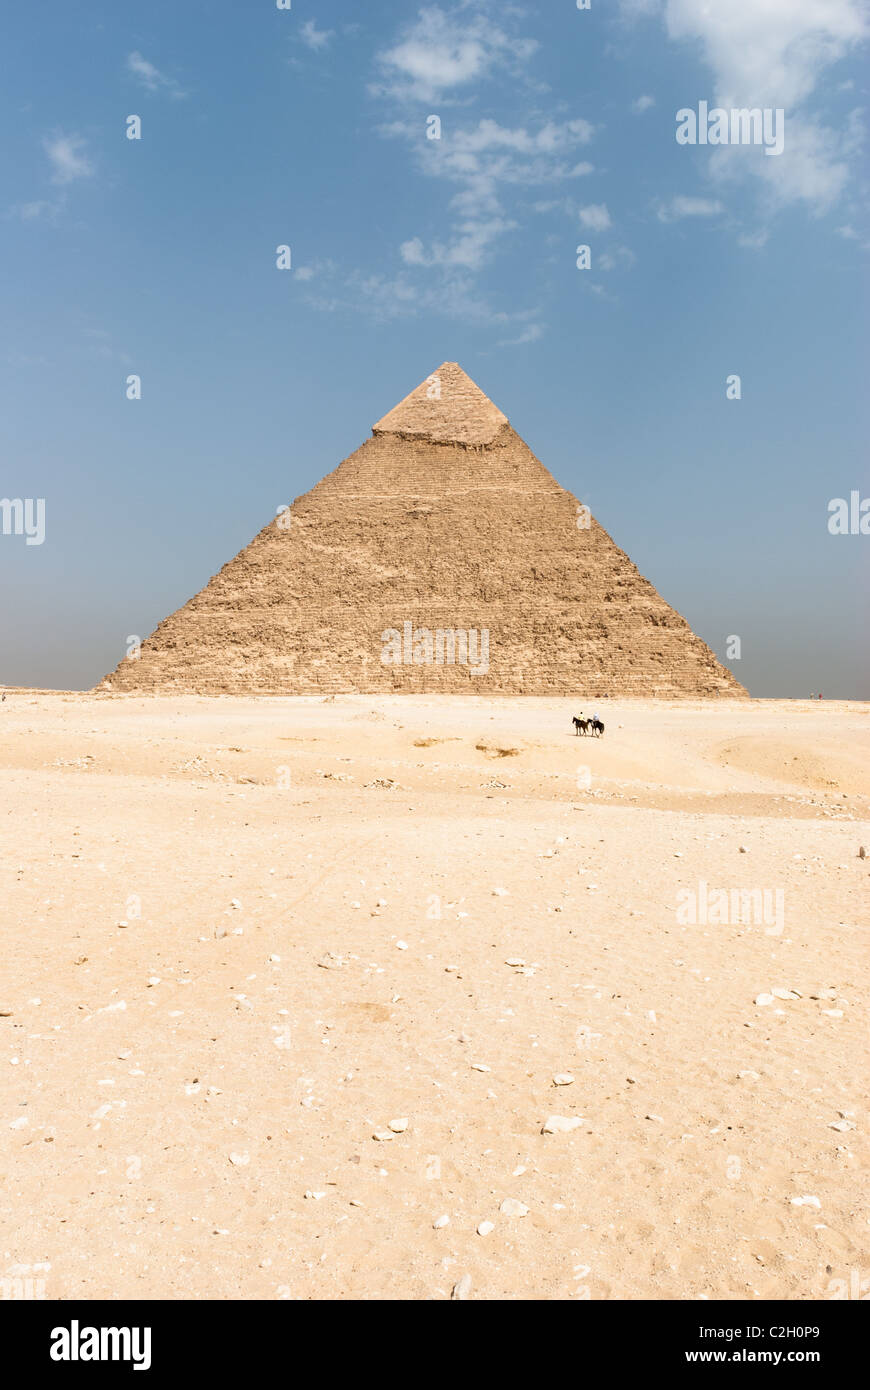 Pyramid of Chephren - Giza necropolis, Lower Egypt Stock Photo